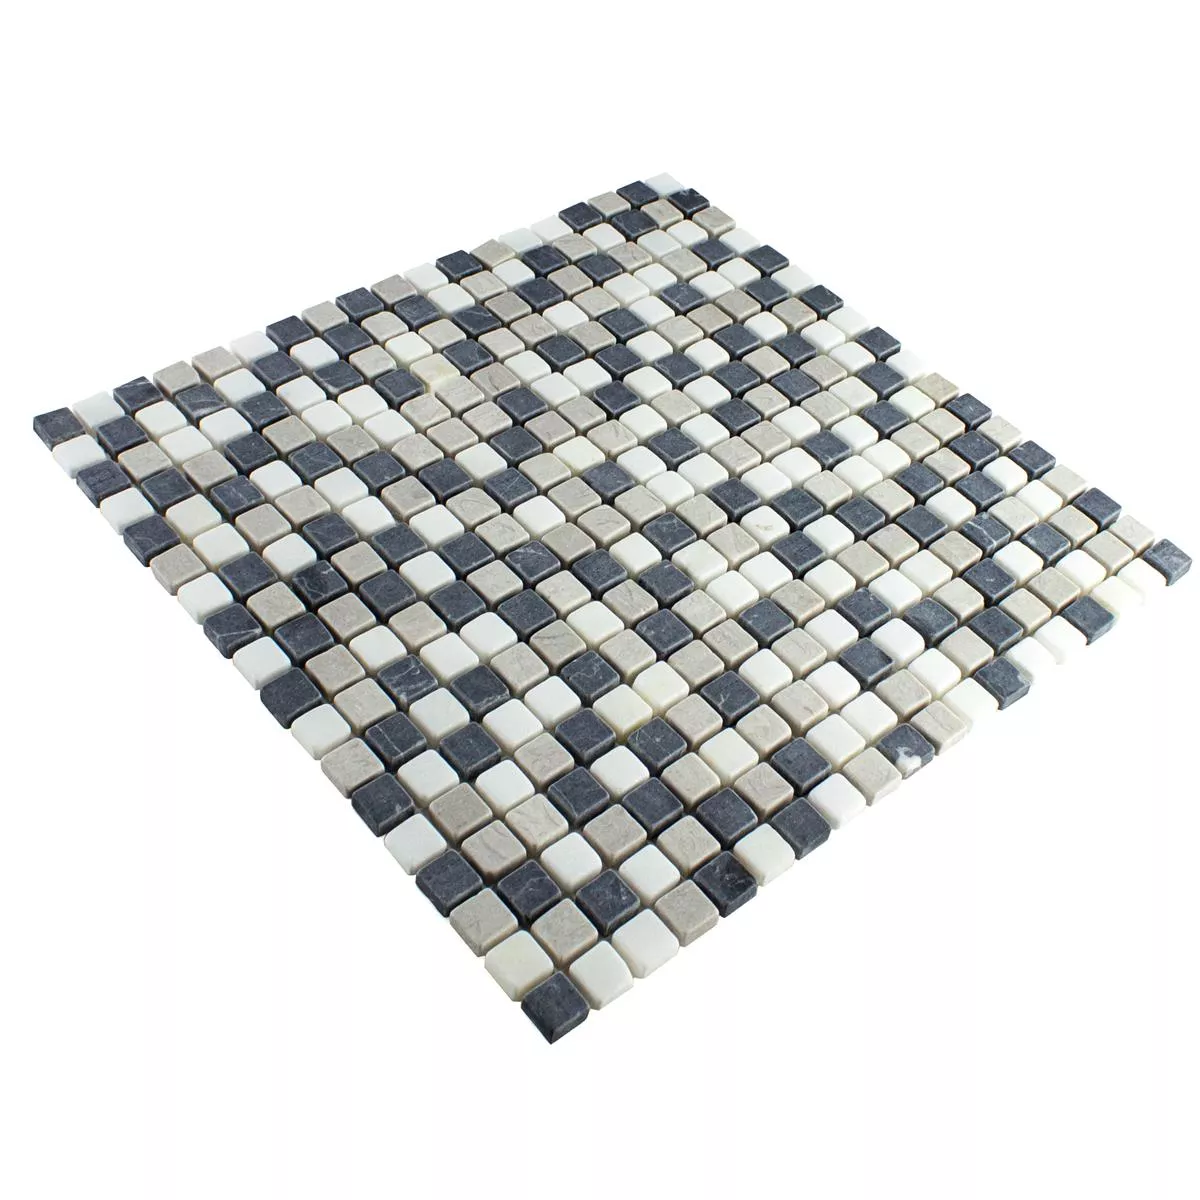 Marble Mosaic Erdemol Beige Grey Black